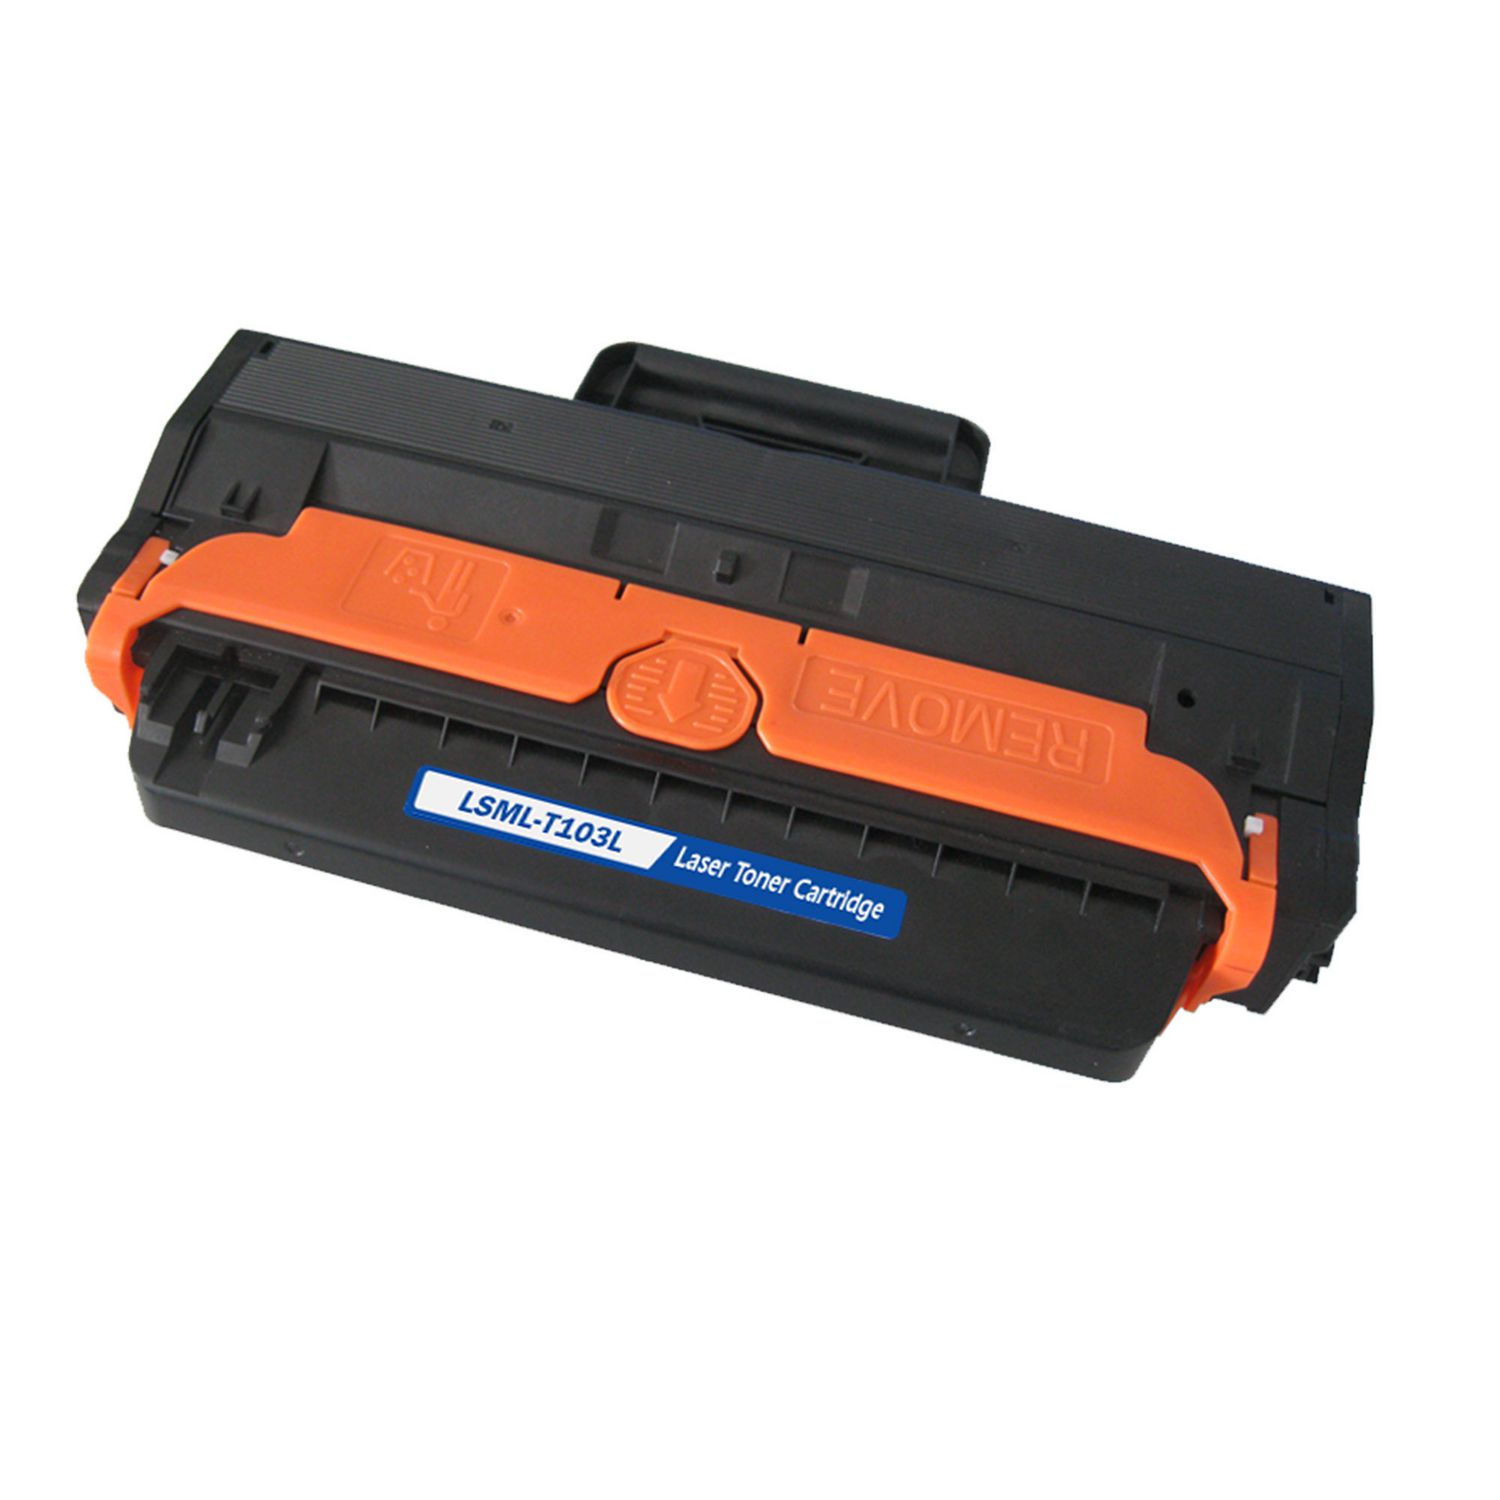 Toner Cartridge Compatible Samsung MLT-D103L (D103L) Black